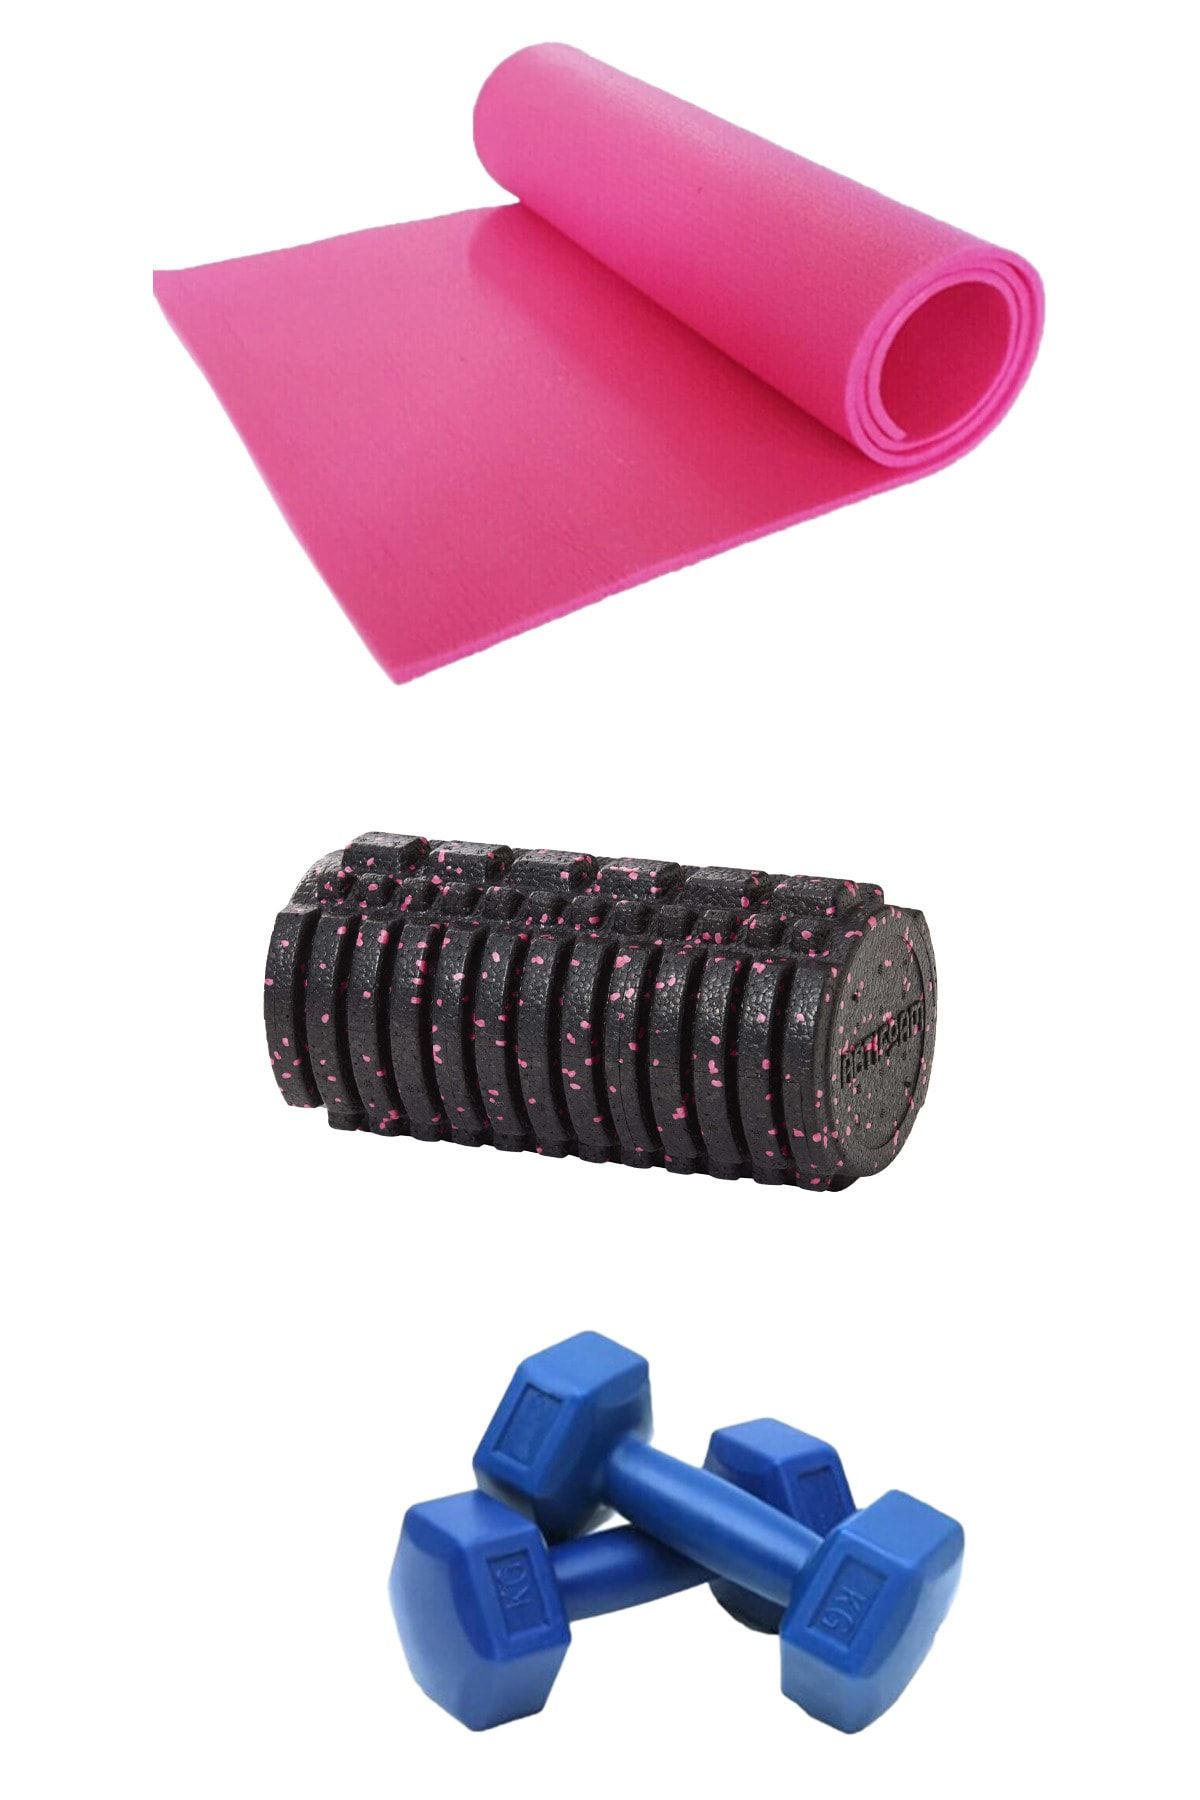 Tosima 7mm Pilates Minderi Ve Foam Roller Ve 1 Kg Dambıl Seti Egzersiz Seti Yoga Seti